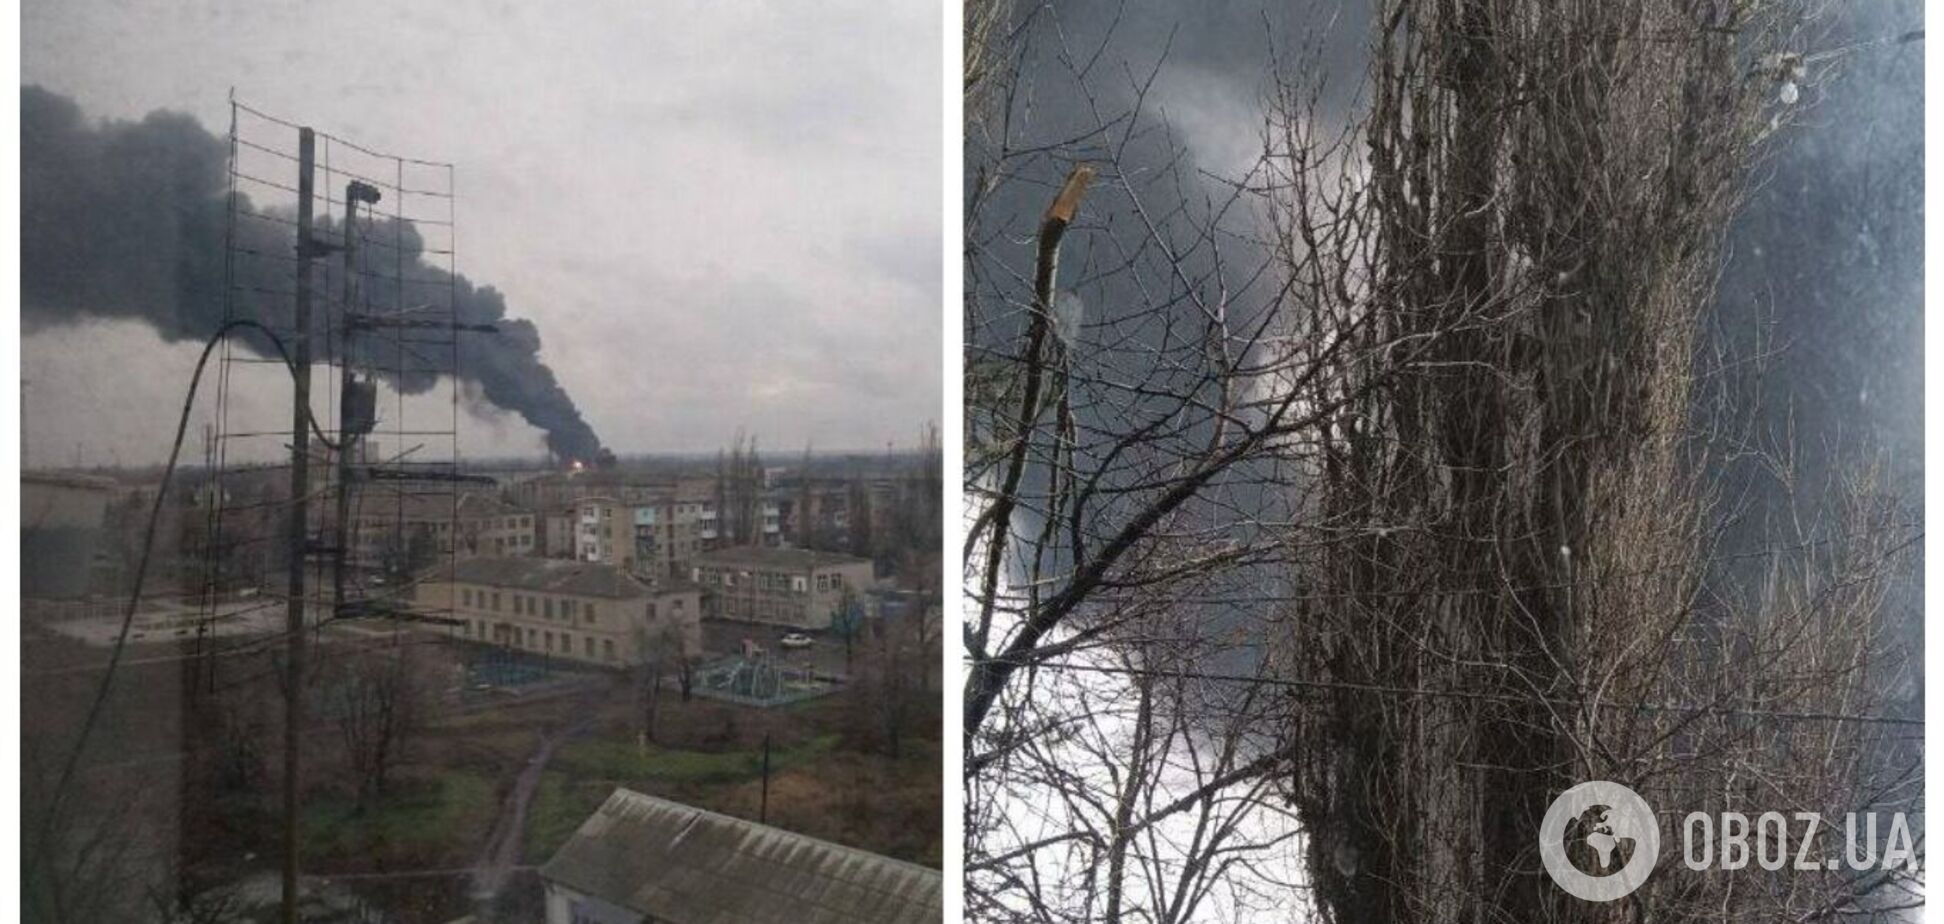 В Иловайске взорвалось нефтехранилище оккупантов, начался пожар. Фото